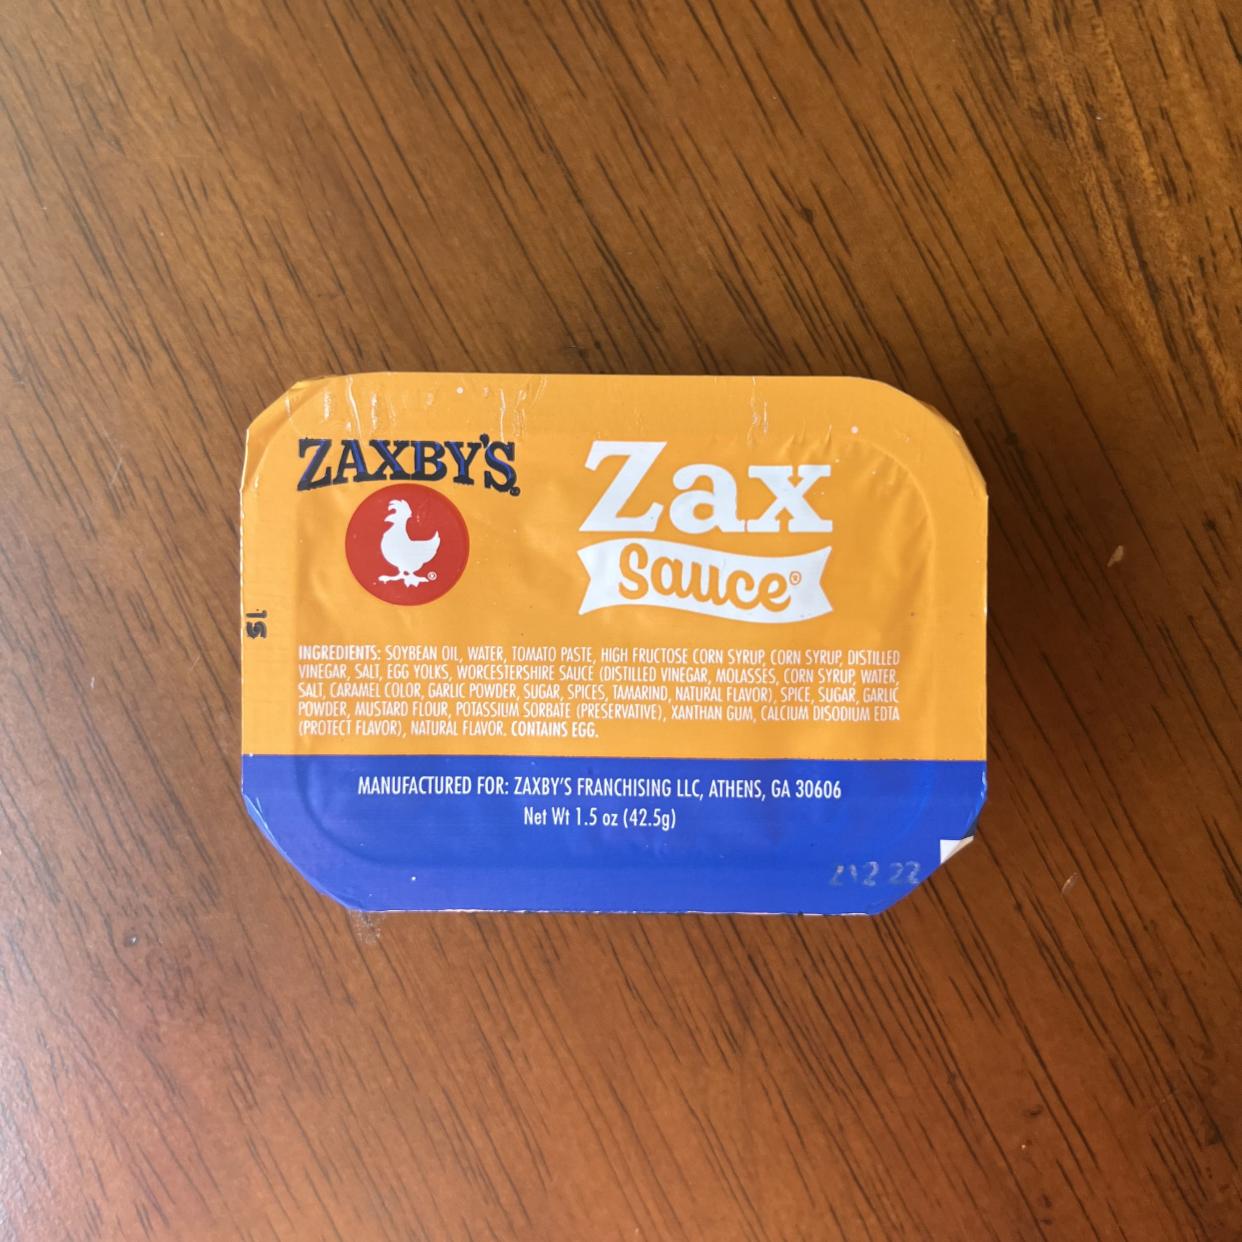 Zaxby’s Zax sauce